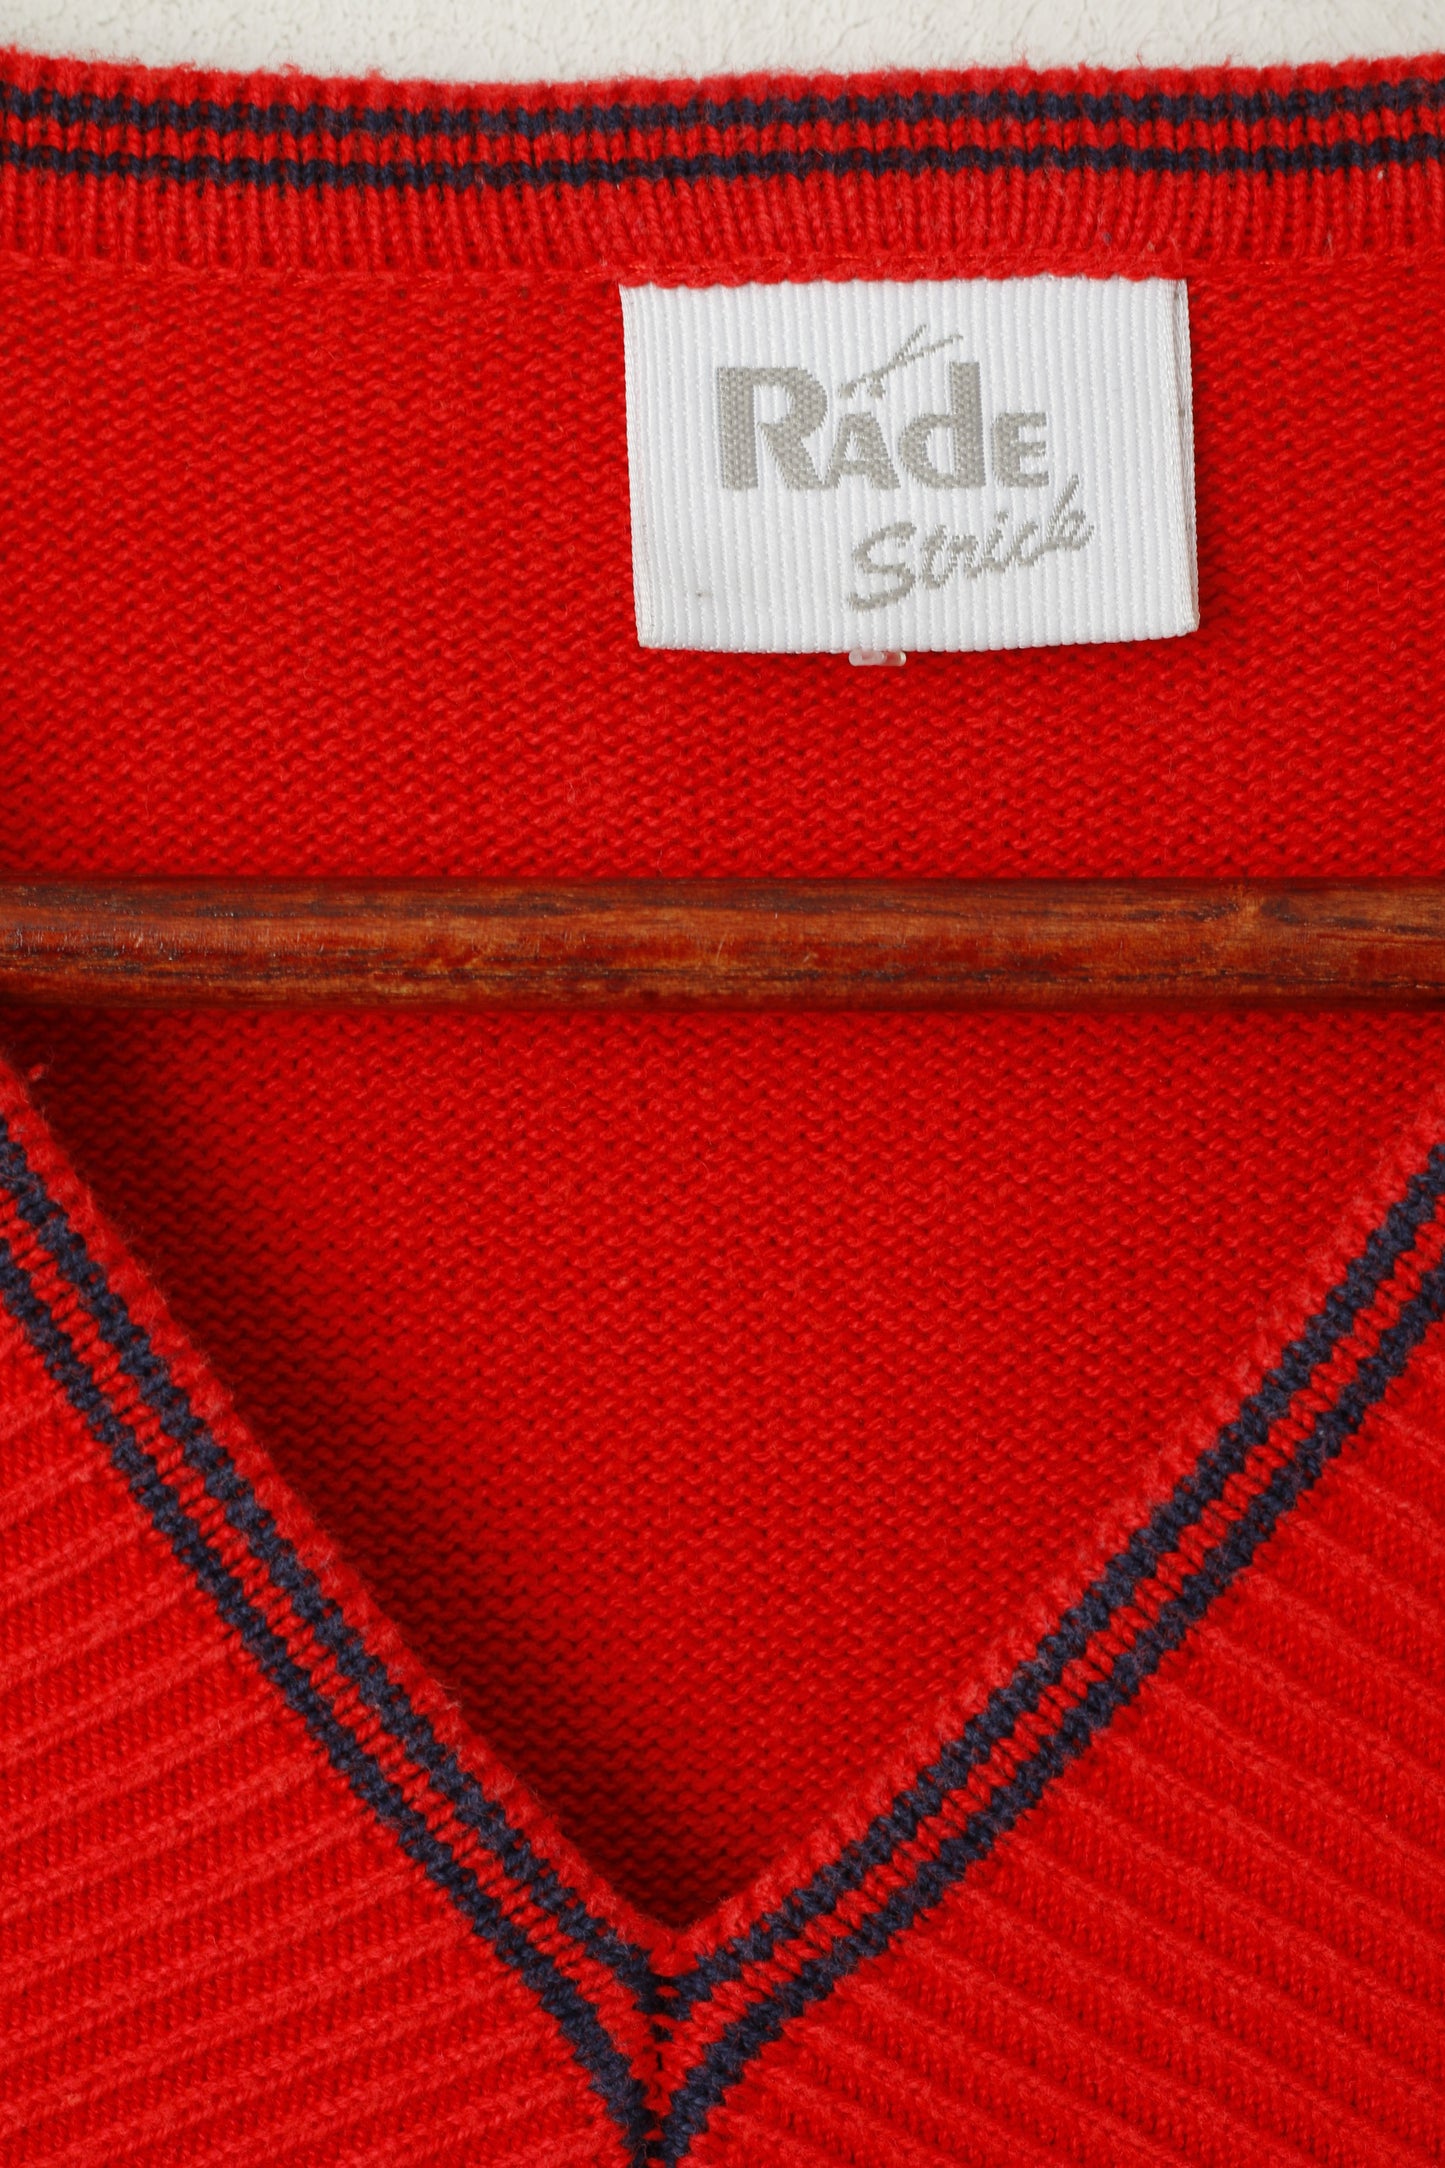 Rade Strick Women 46 L Jumper Red Vintage Striped V Neck Cotton 3/4 Sleeve Top